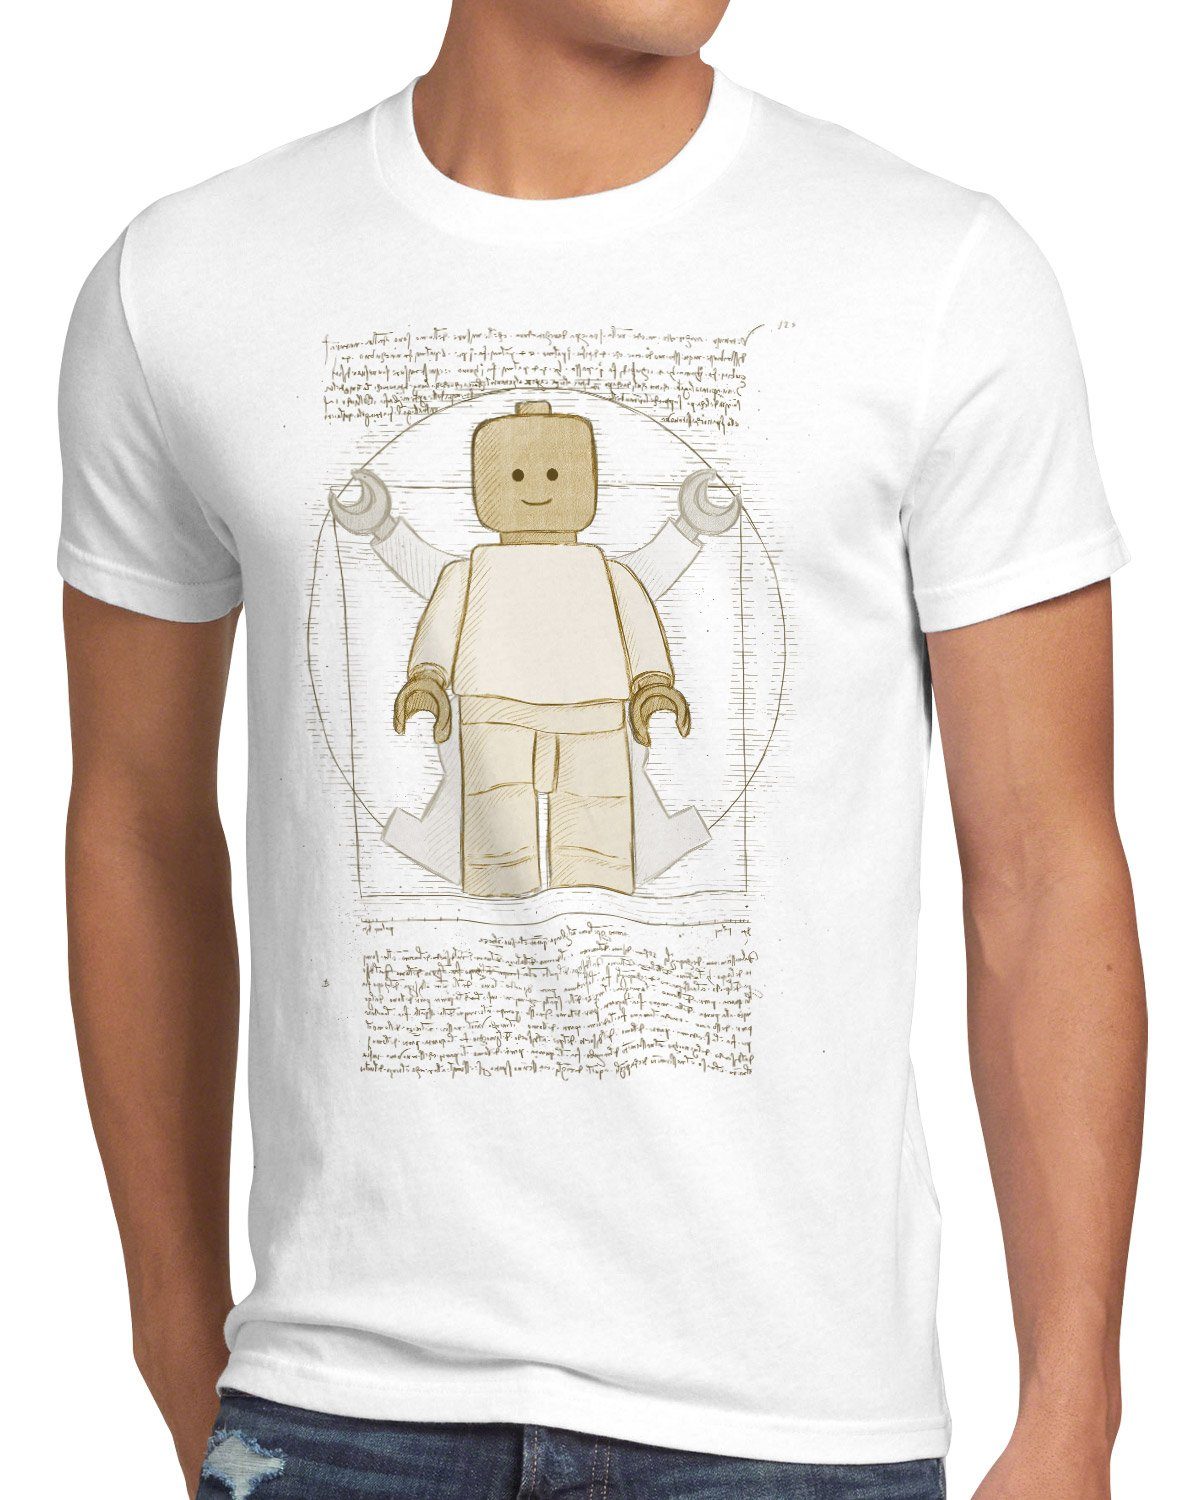 Print-Shirt vinci weiß Vitruvianische T-Shirt Herren Klemmbausteinfigur mensch da style3